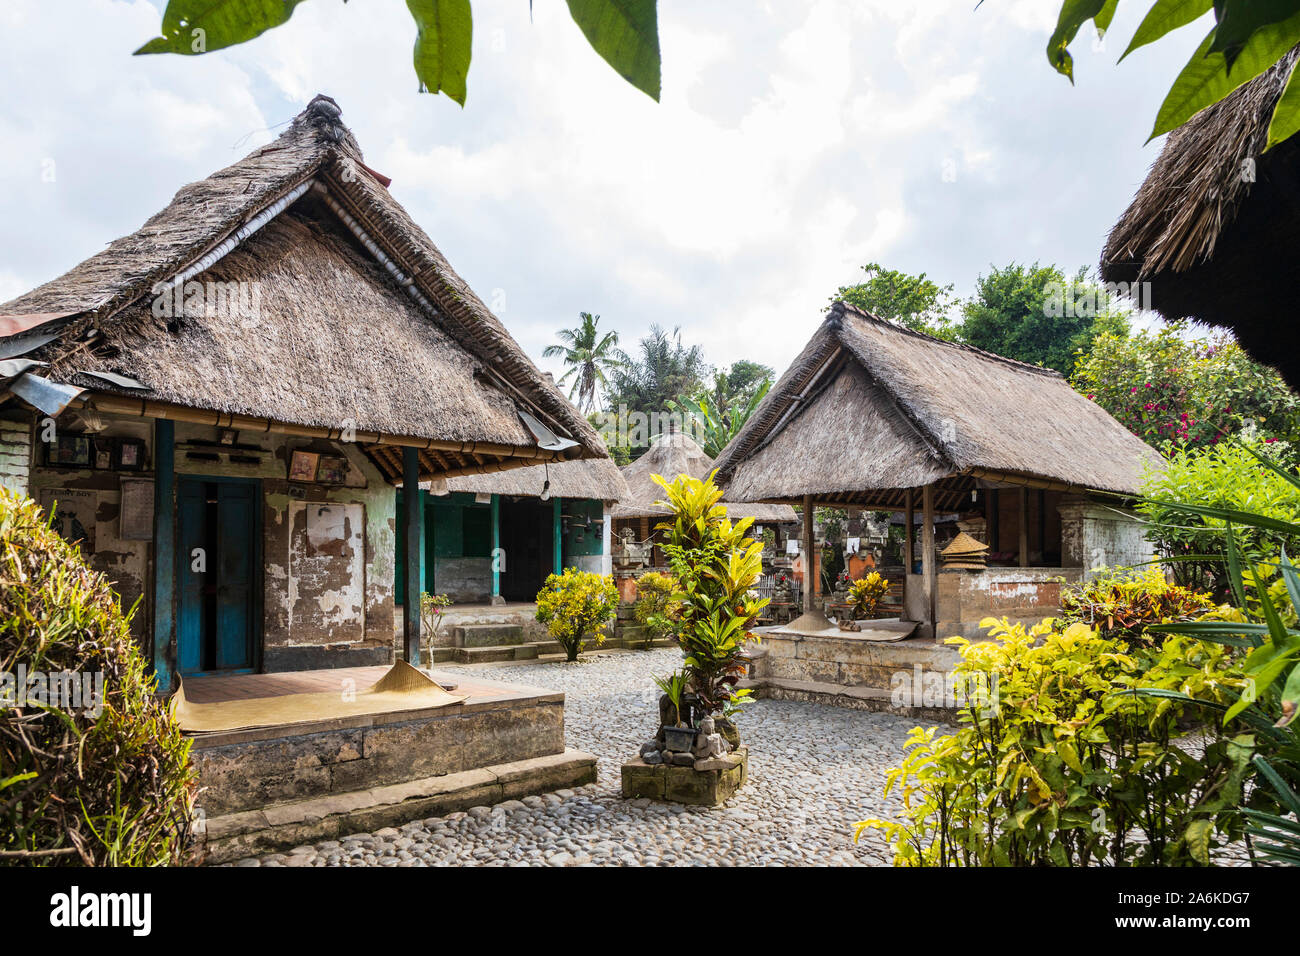 Traditionelle balinesische Häuser, Ubud, Bali, Indonesien, Südostasien,  Asien Stockfotografie - Alamy